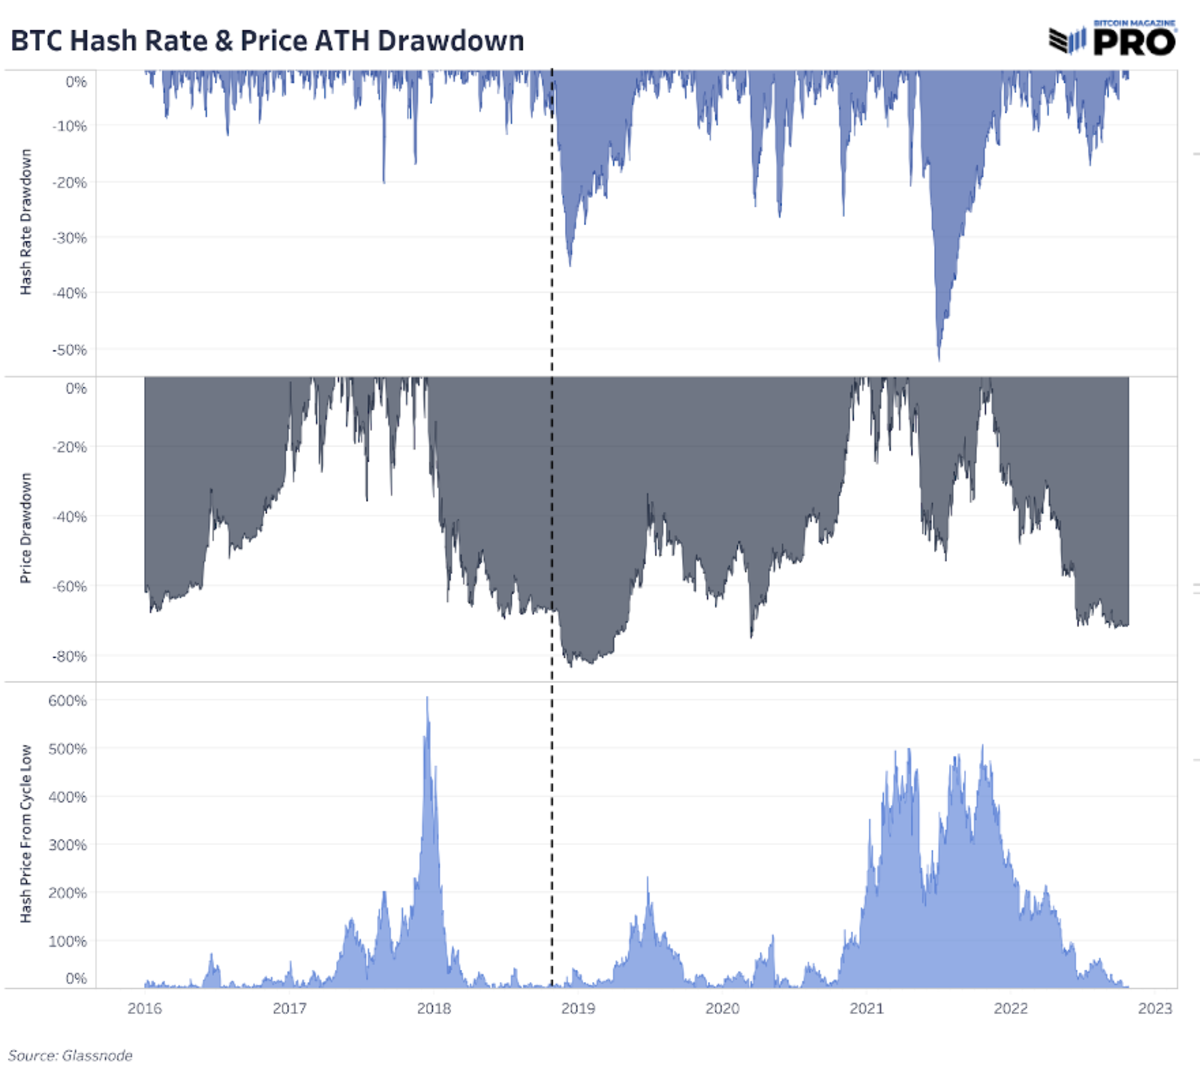 Індустрія видобутку біткойнів перебуває під тиском, оскільки хеш-ціна досягає нових мінімумів, хеш-рейт досягає нових історичних максимумів, а коригування складності продовжує зростати.